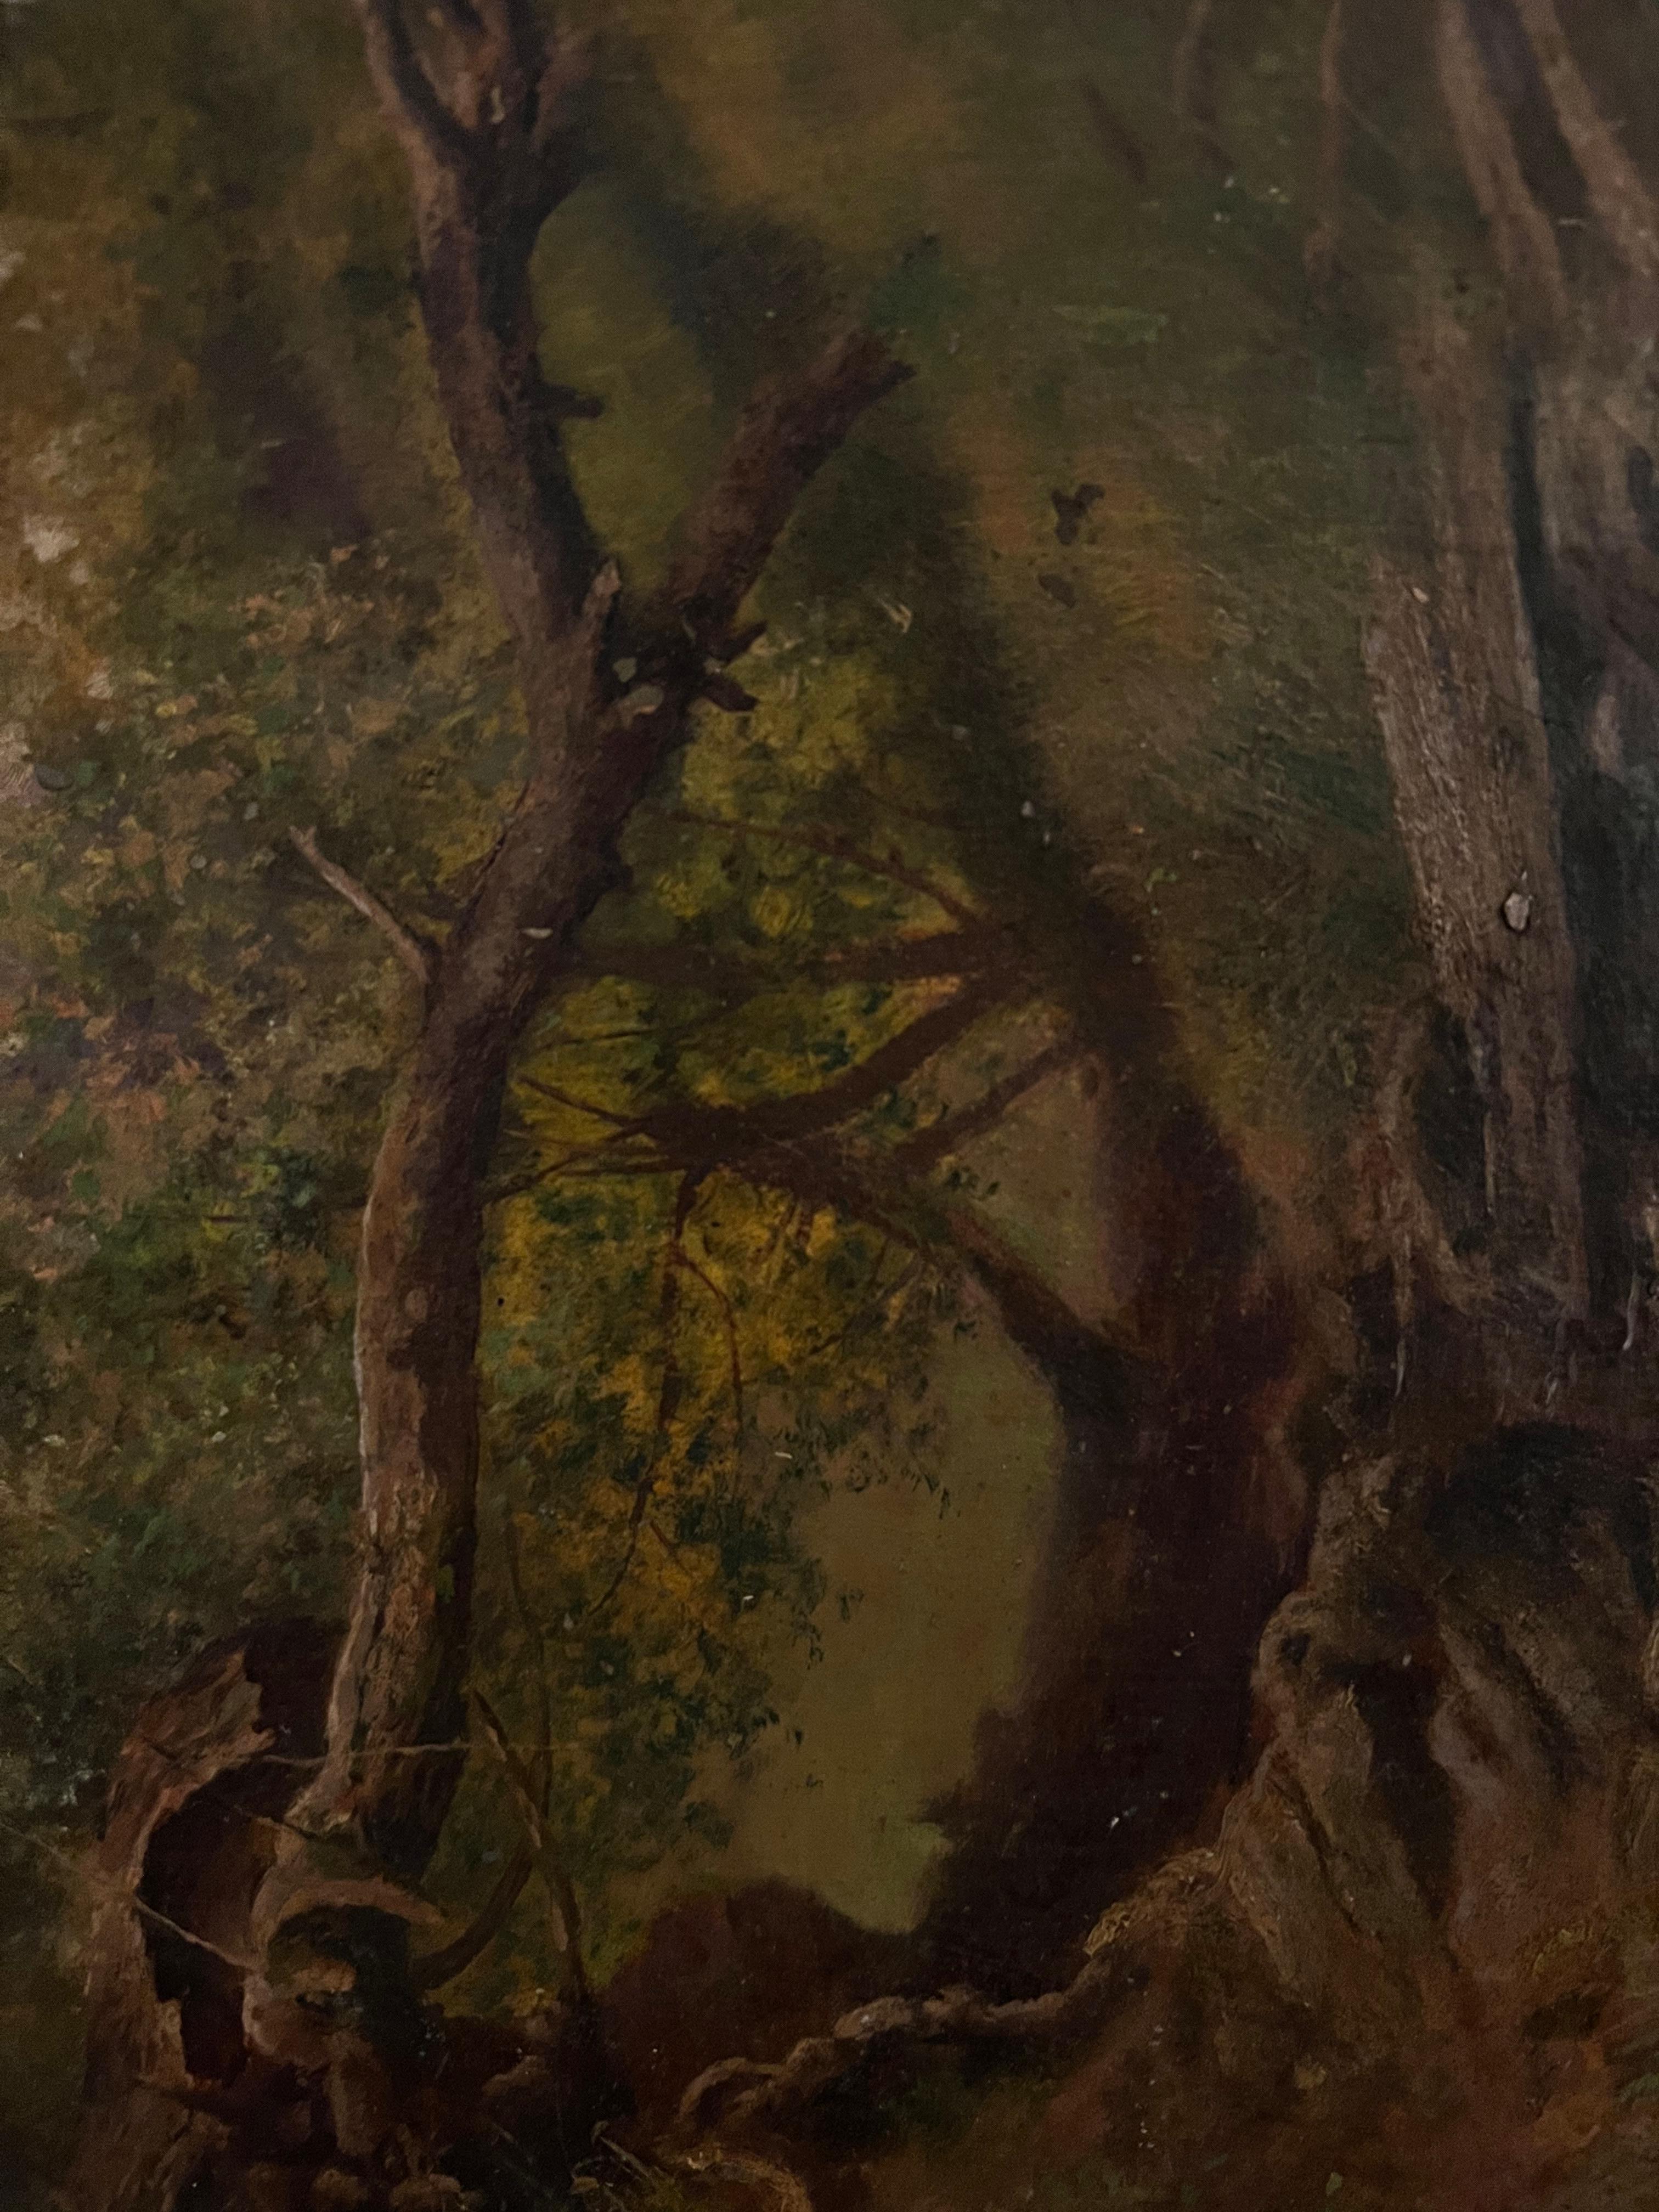 Ancien arbre à huile victorien anglais tombé d'une souche d'arbre tombée  - Painting de Antique English 